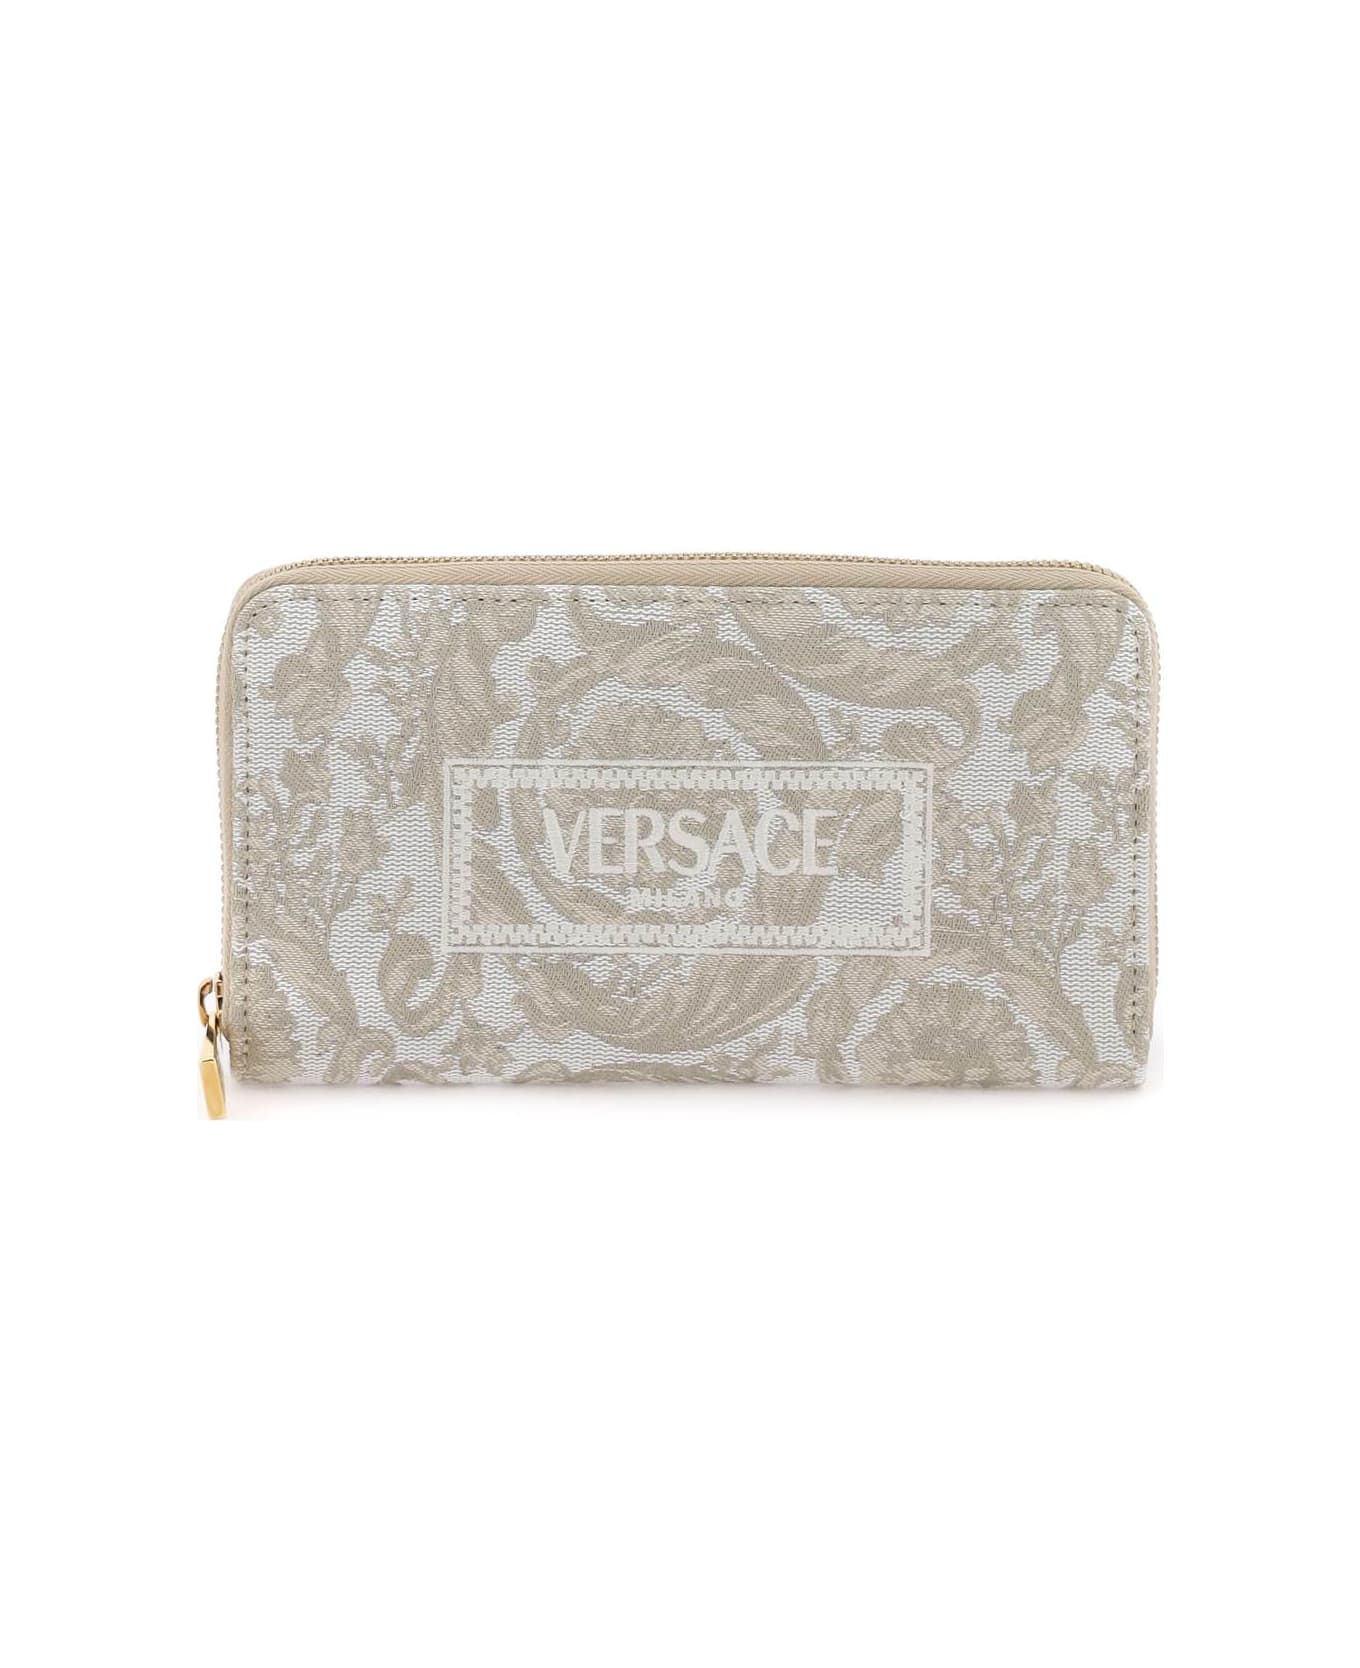 Versace Barocco Long Wallet - BEIGE BEIGE VERSACE GOLD (Beige) 財布